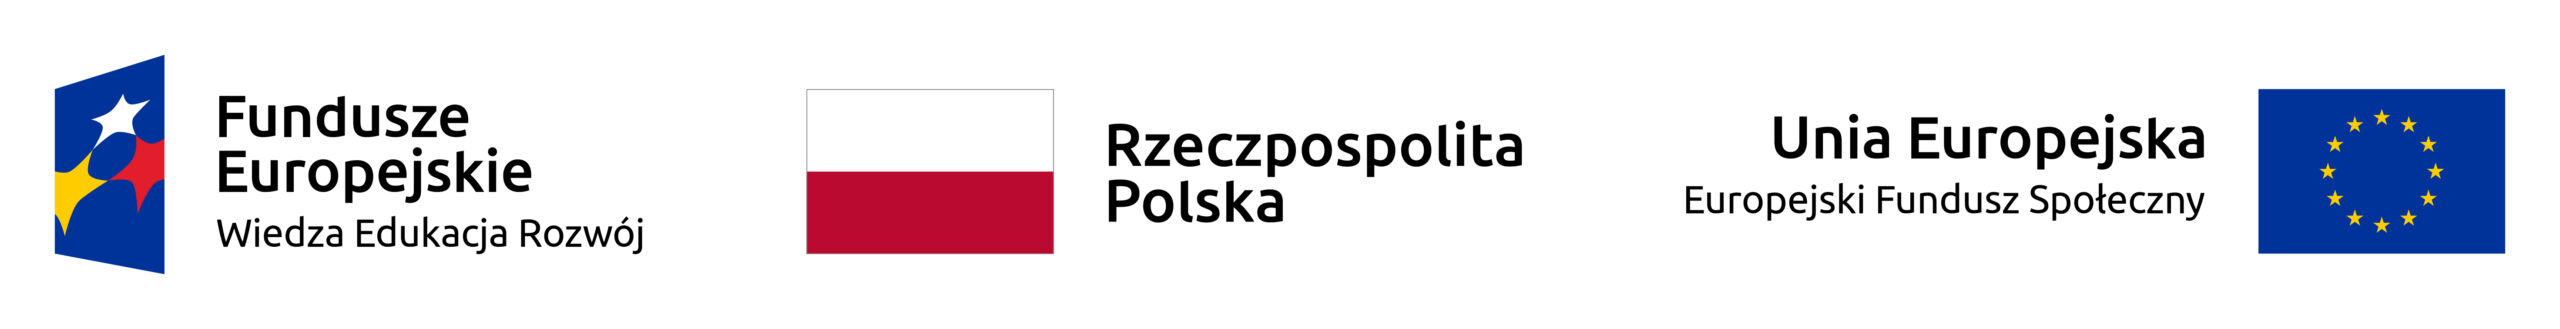 Logotypy: Fundusze Europejskie Wiedza Edukacja Rozwój, Flaga Rzeczypospolita Polska, Unia Europejska Europejski Fundusz Społeczny